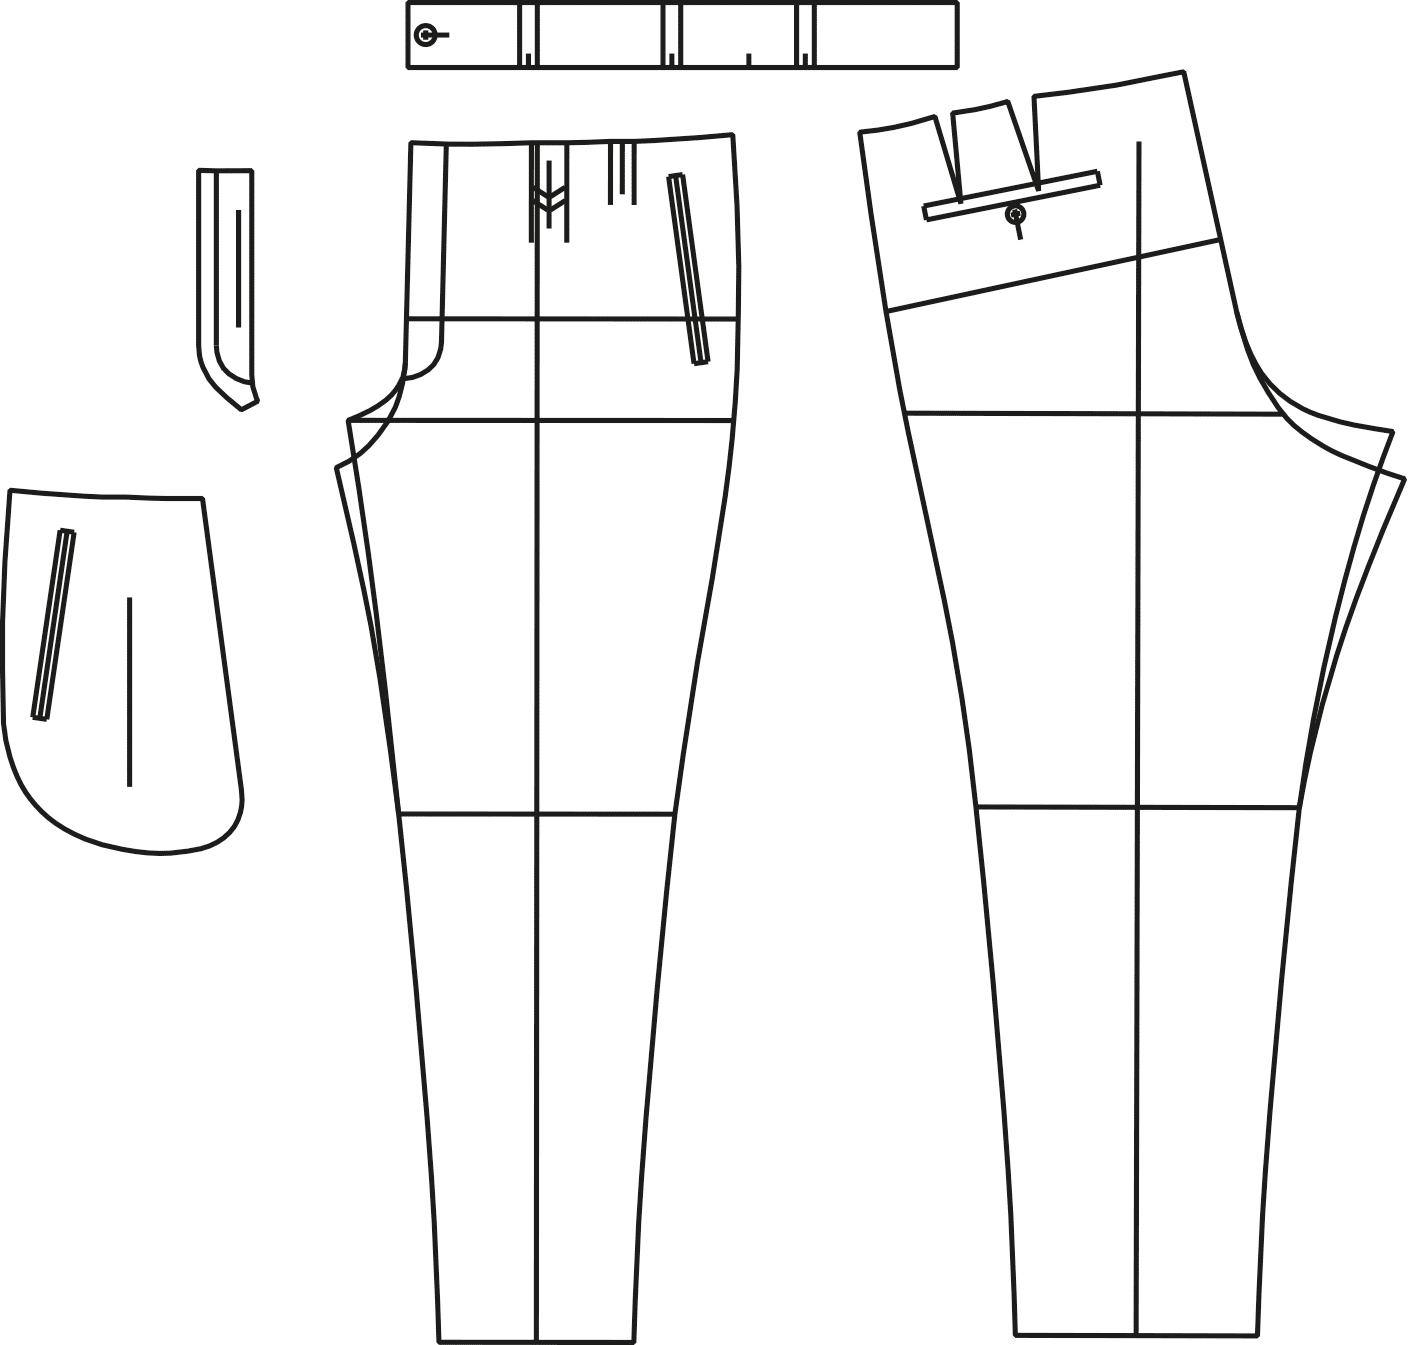 Abgebildet sind die fertigen Schnitttteile des Schnittmusterbogens für eine Hose.